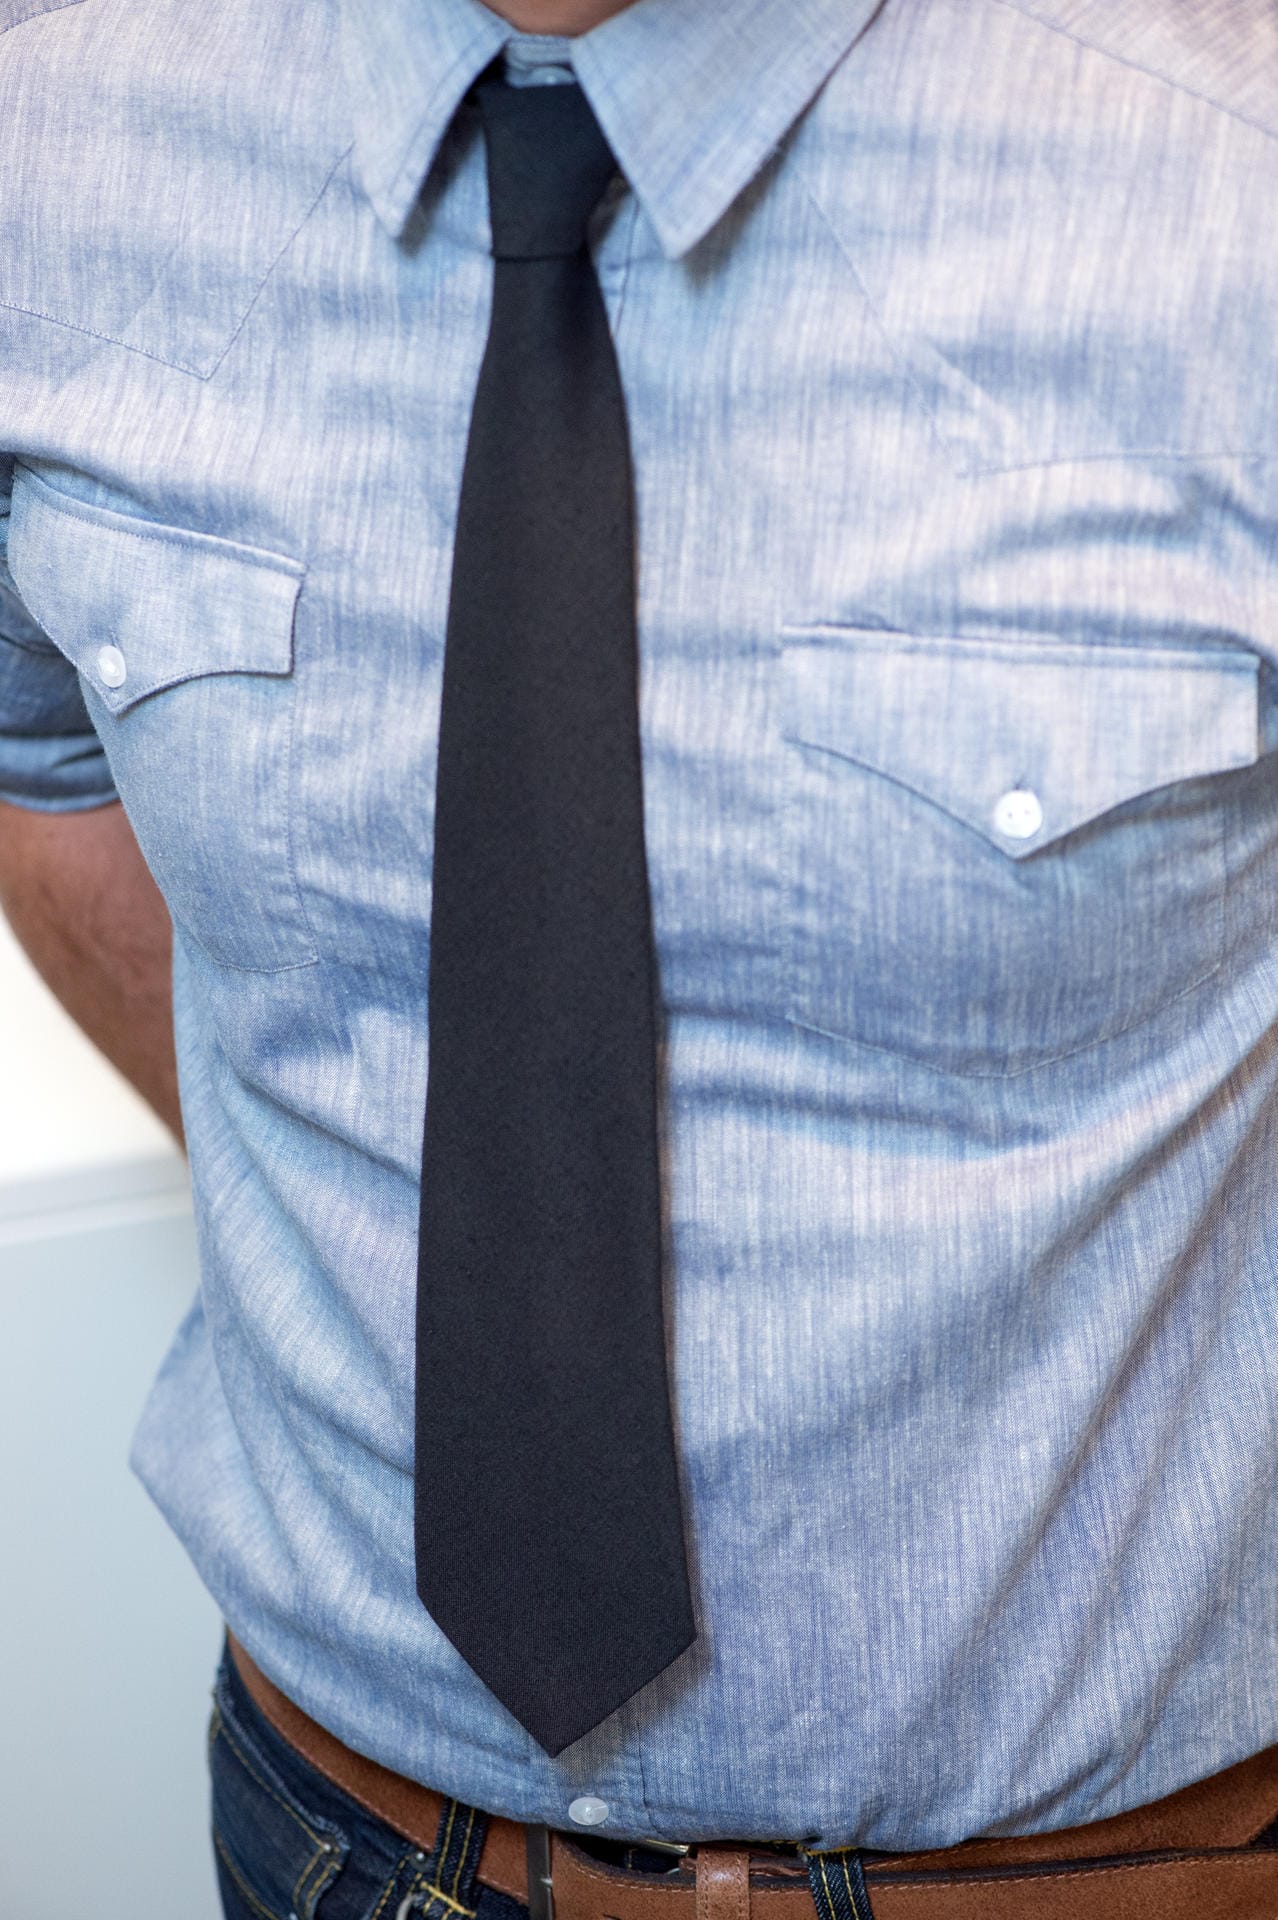 Schmale, dezente und kürzere Krawatten liegen derzeit im Trend. Aber: Maximal eine Handbreit darf zwischen Krawattenspitze und Hosenbund passen.